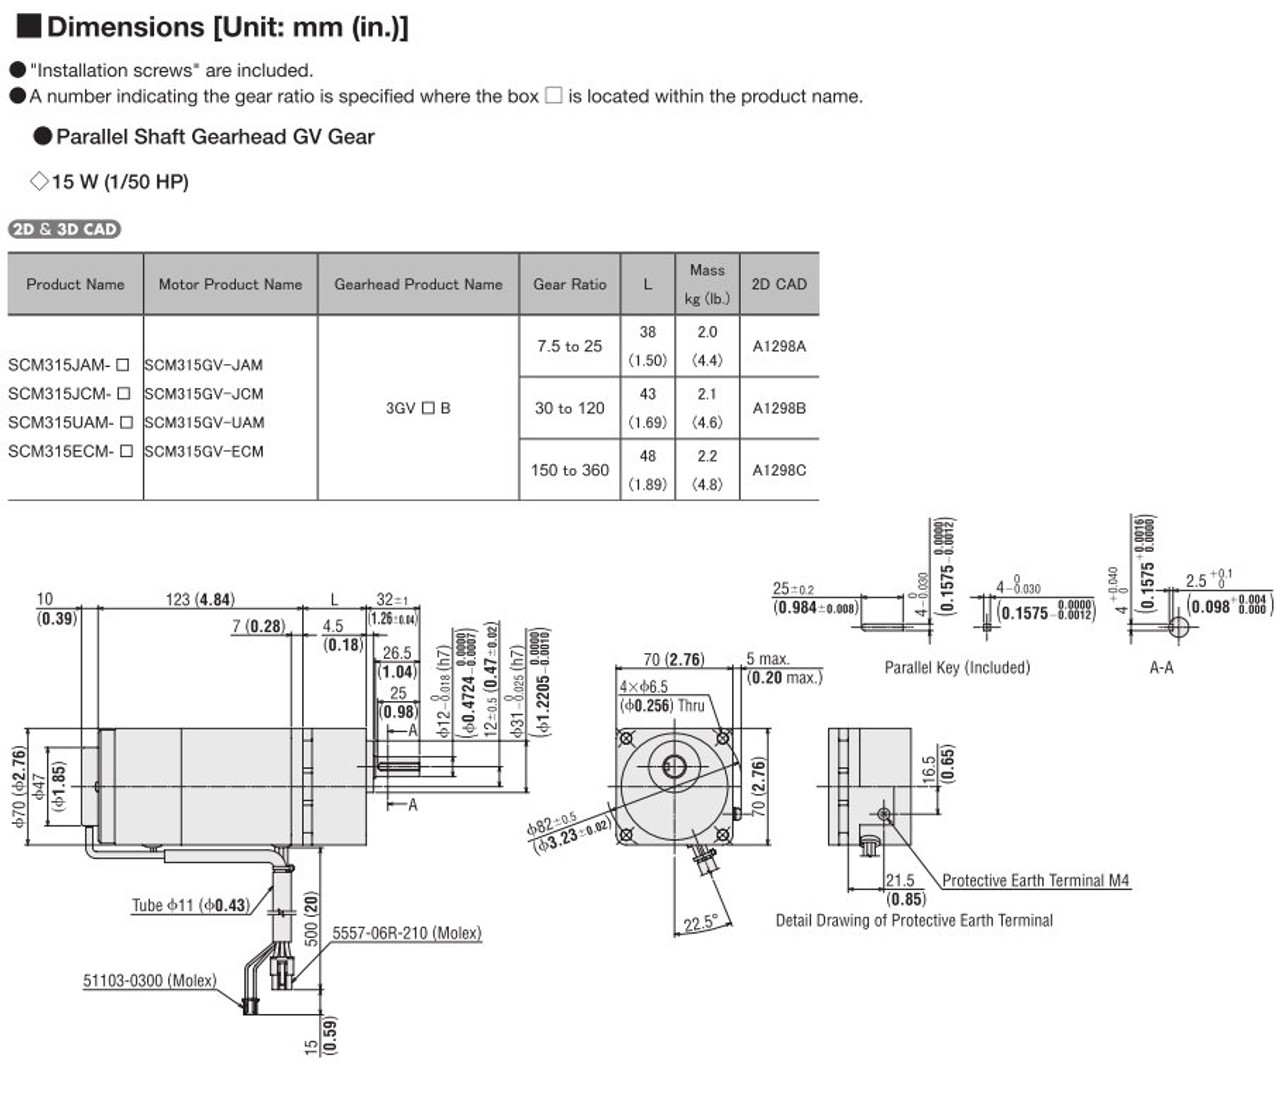 SCM315ECM-25 / DSCD15ECM - Dimensions